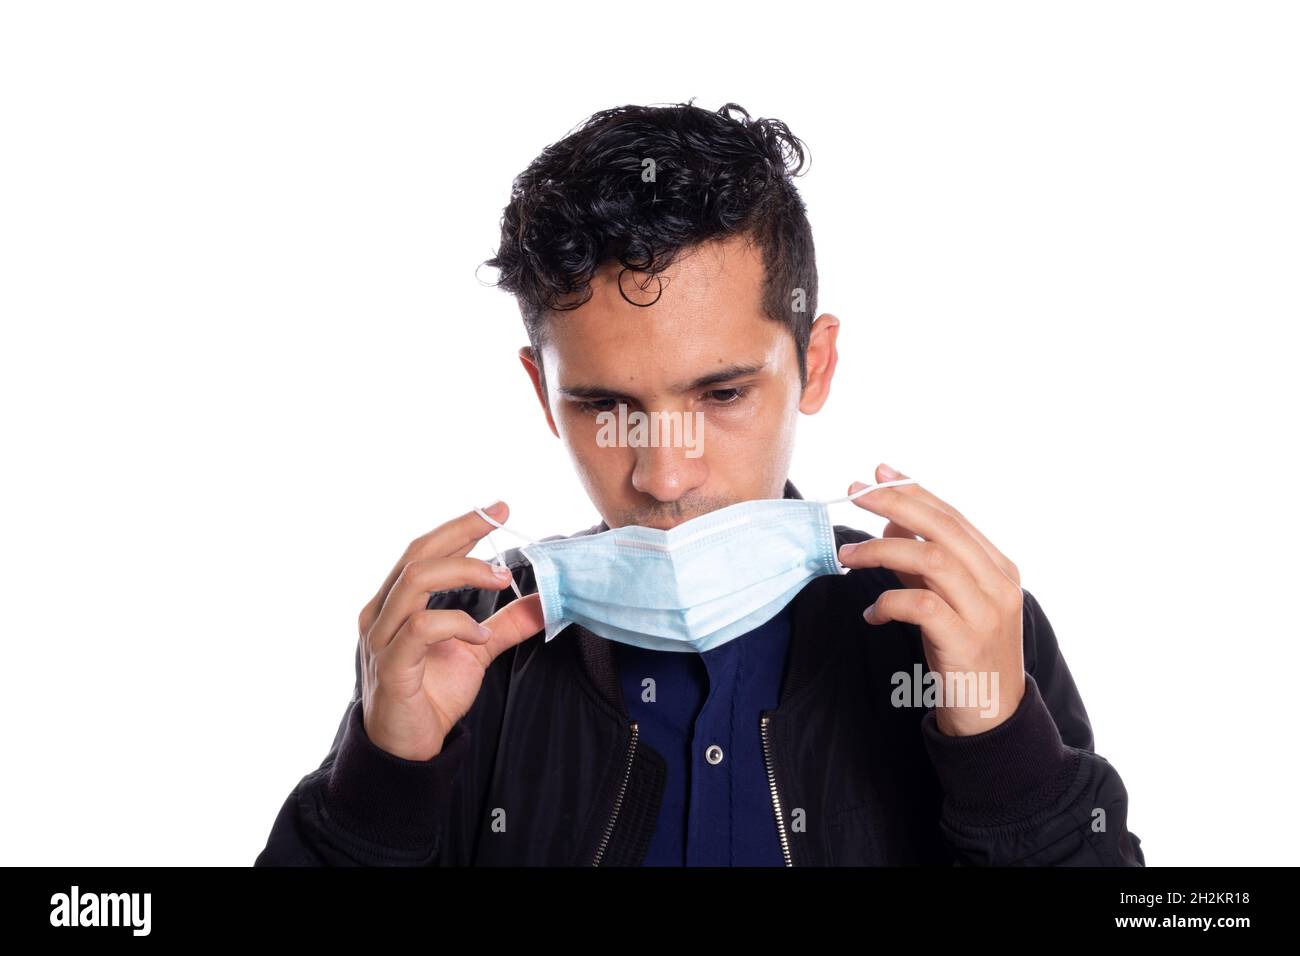 Mann, der eine Gesichtsmaske aufsetzt. Weißer Hintergrund. Junger Erwachsener, der sich vor Viren schützen will, zieht eine Gesichtsmaske an. Stockfoto